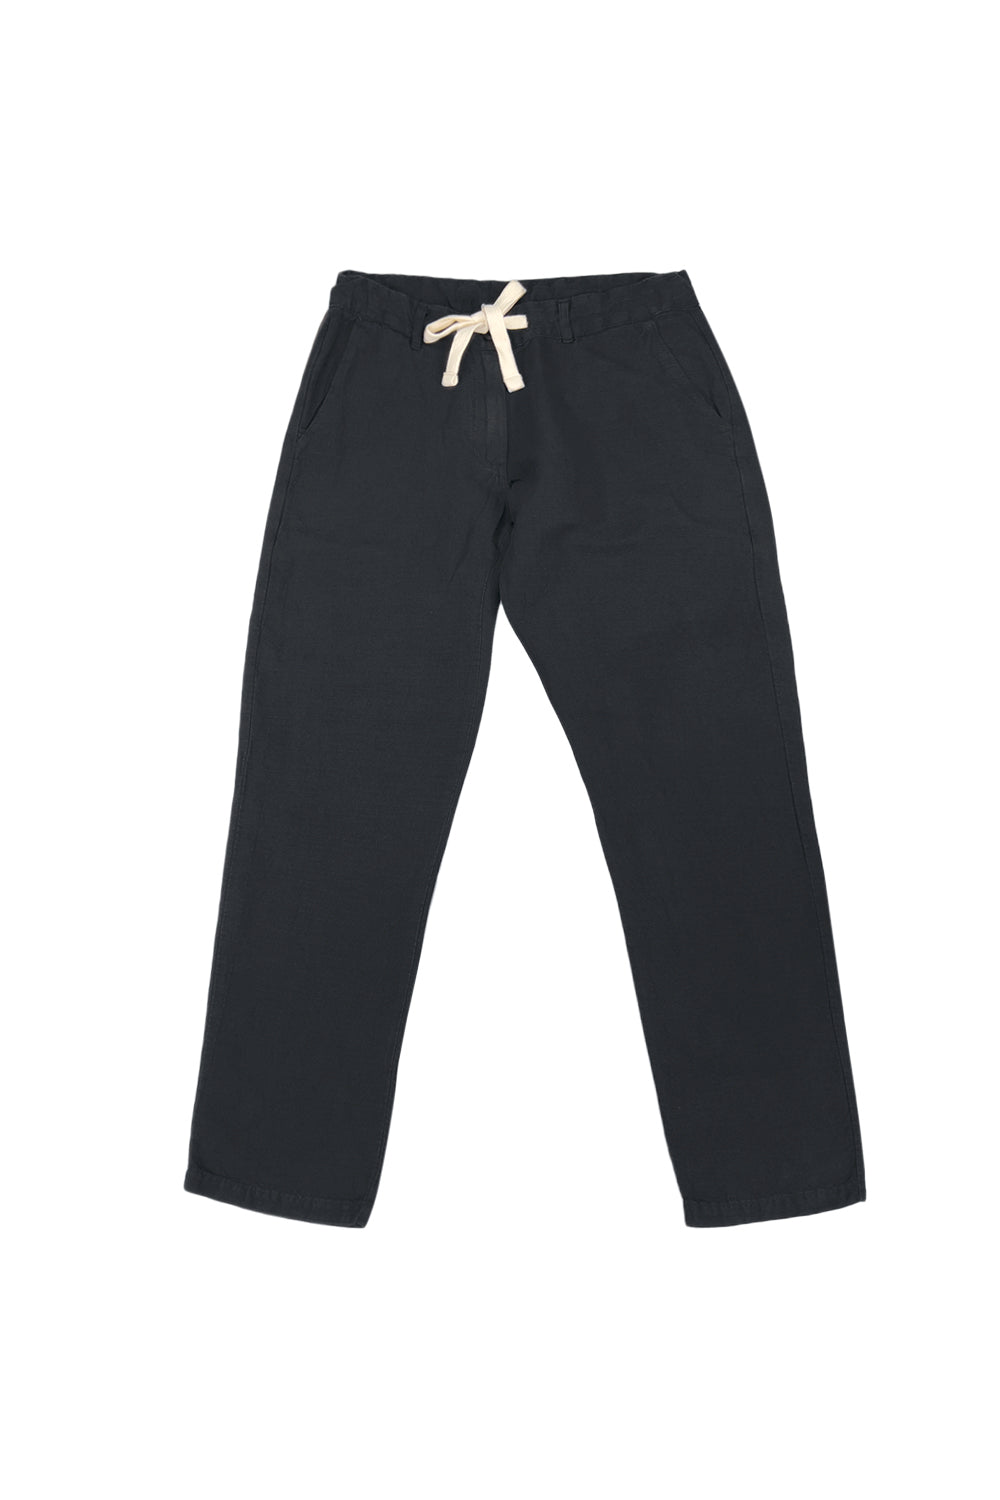 Traverse Pant | Jungmaven Hemp Clothing & Accessories / Color: Black